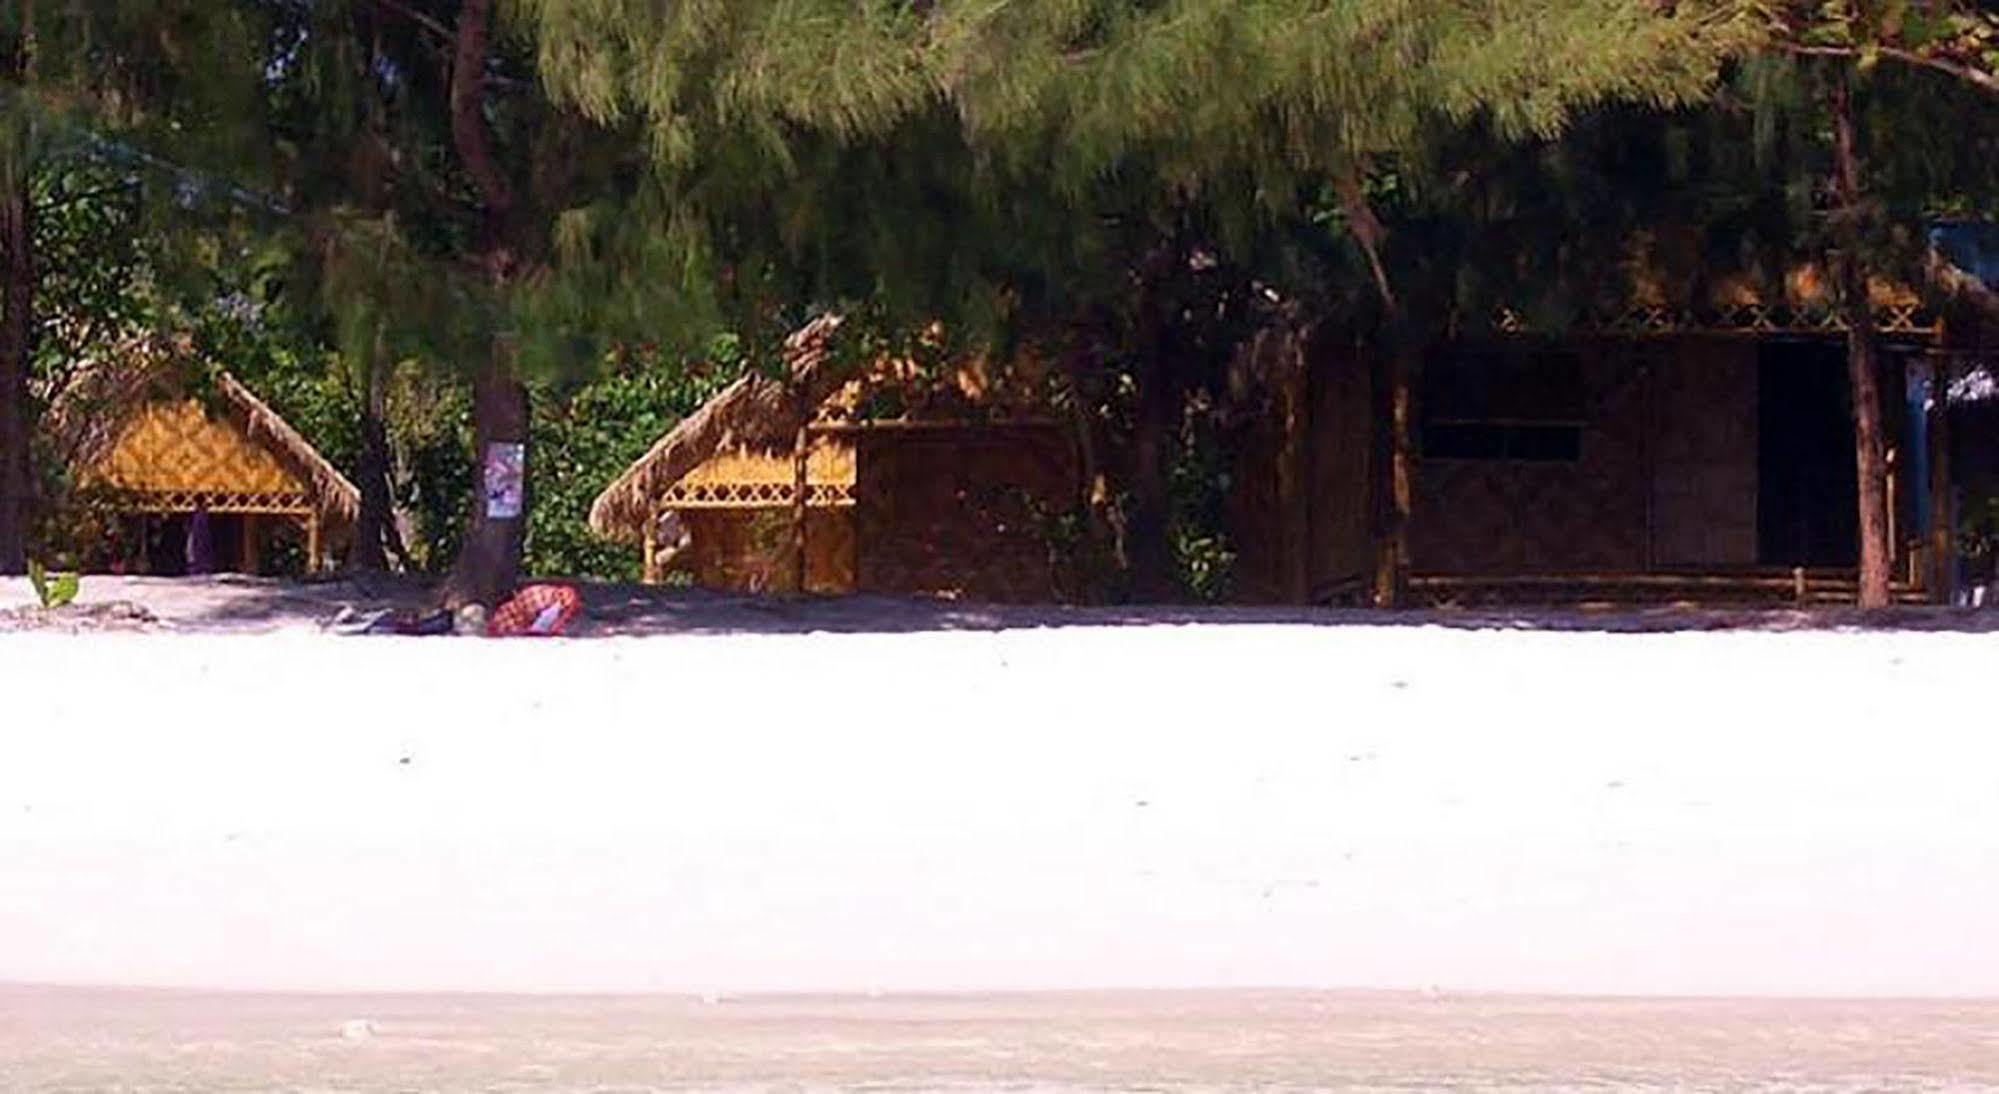 Green View Beach Resort Koh Lipe Exterior photo